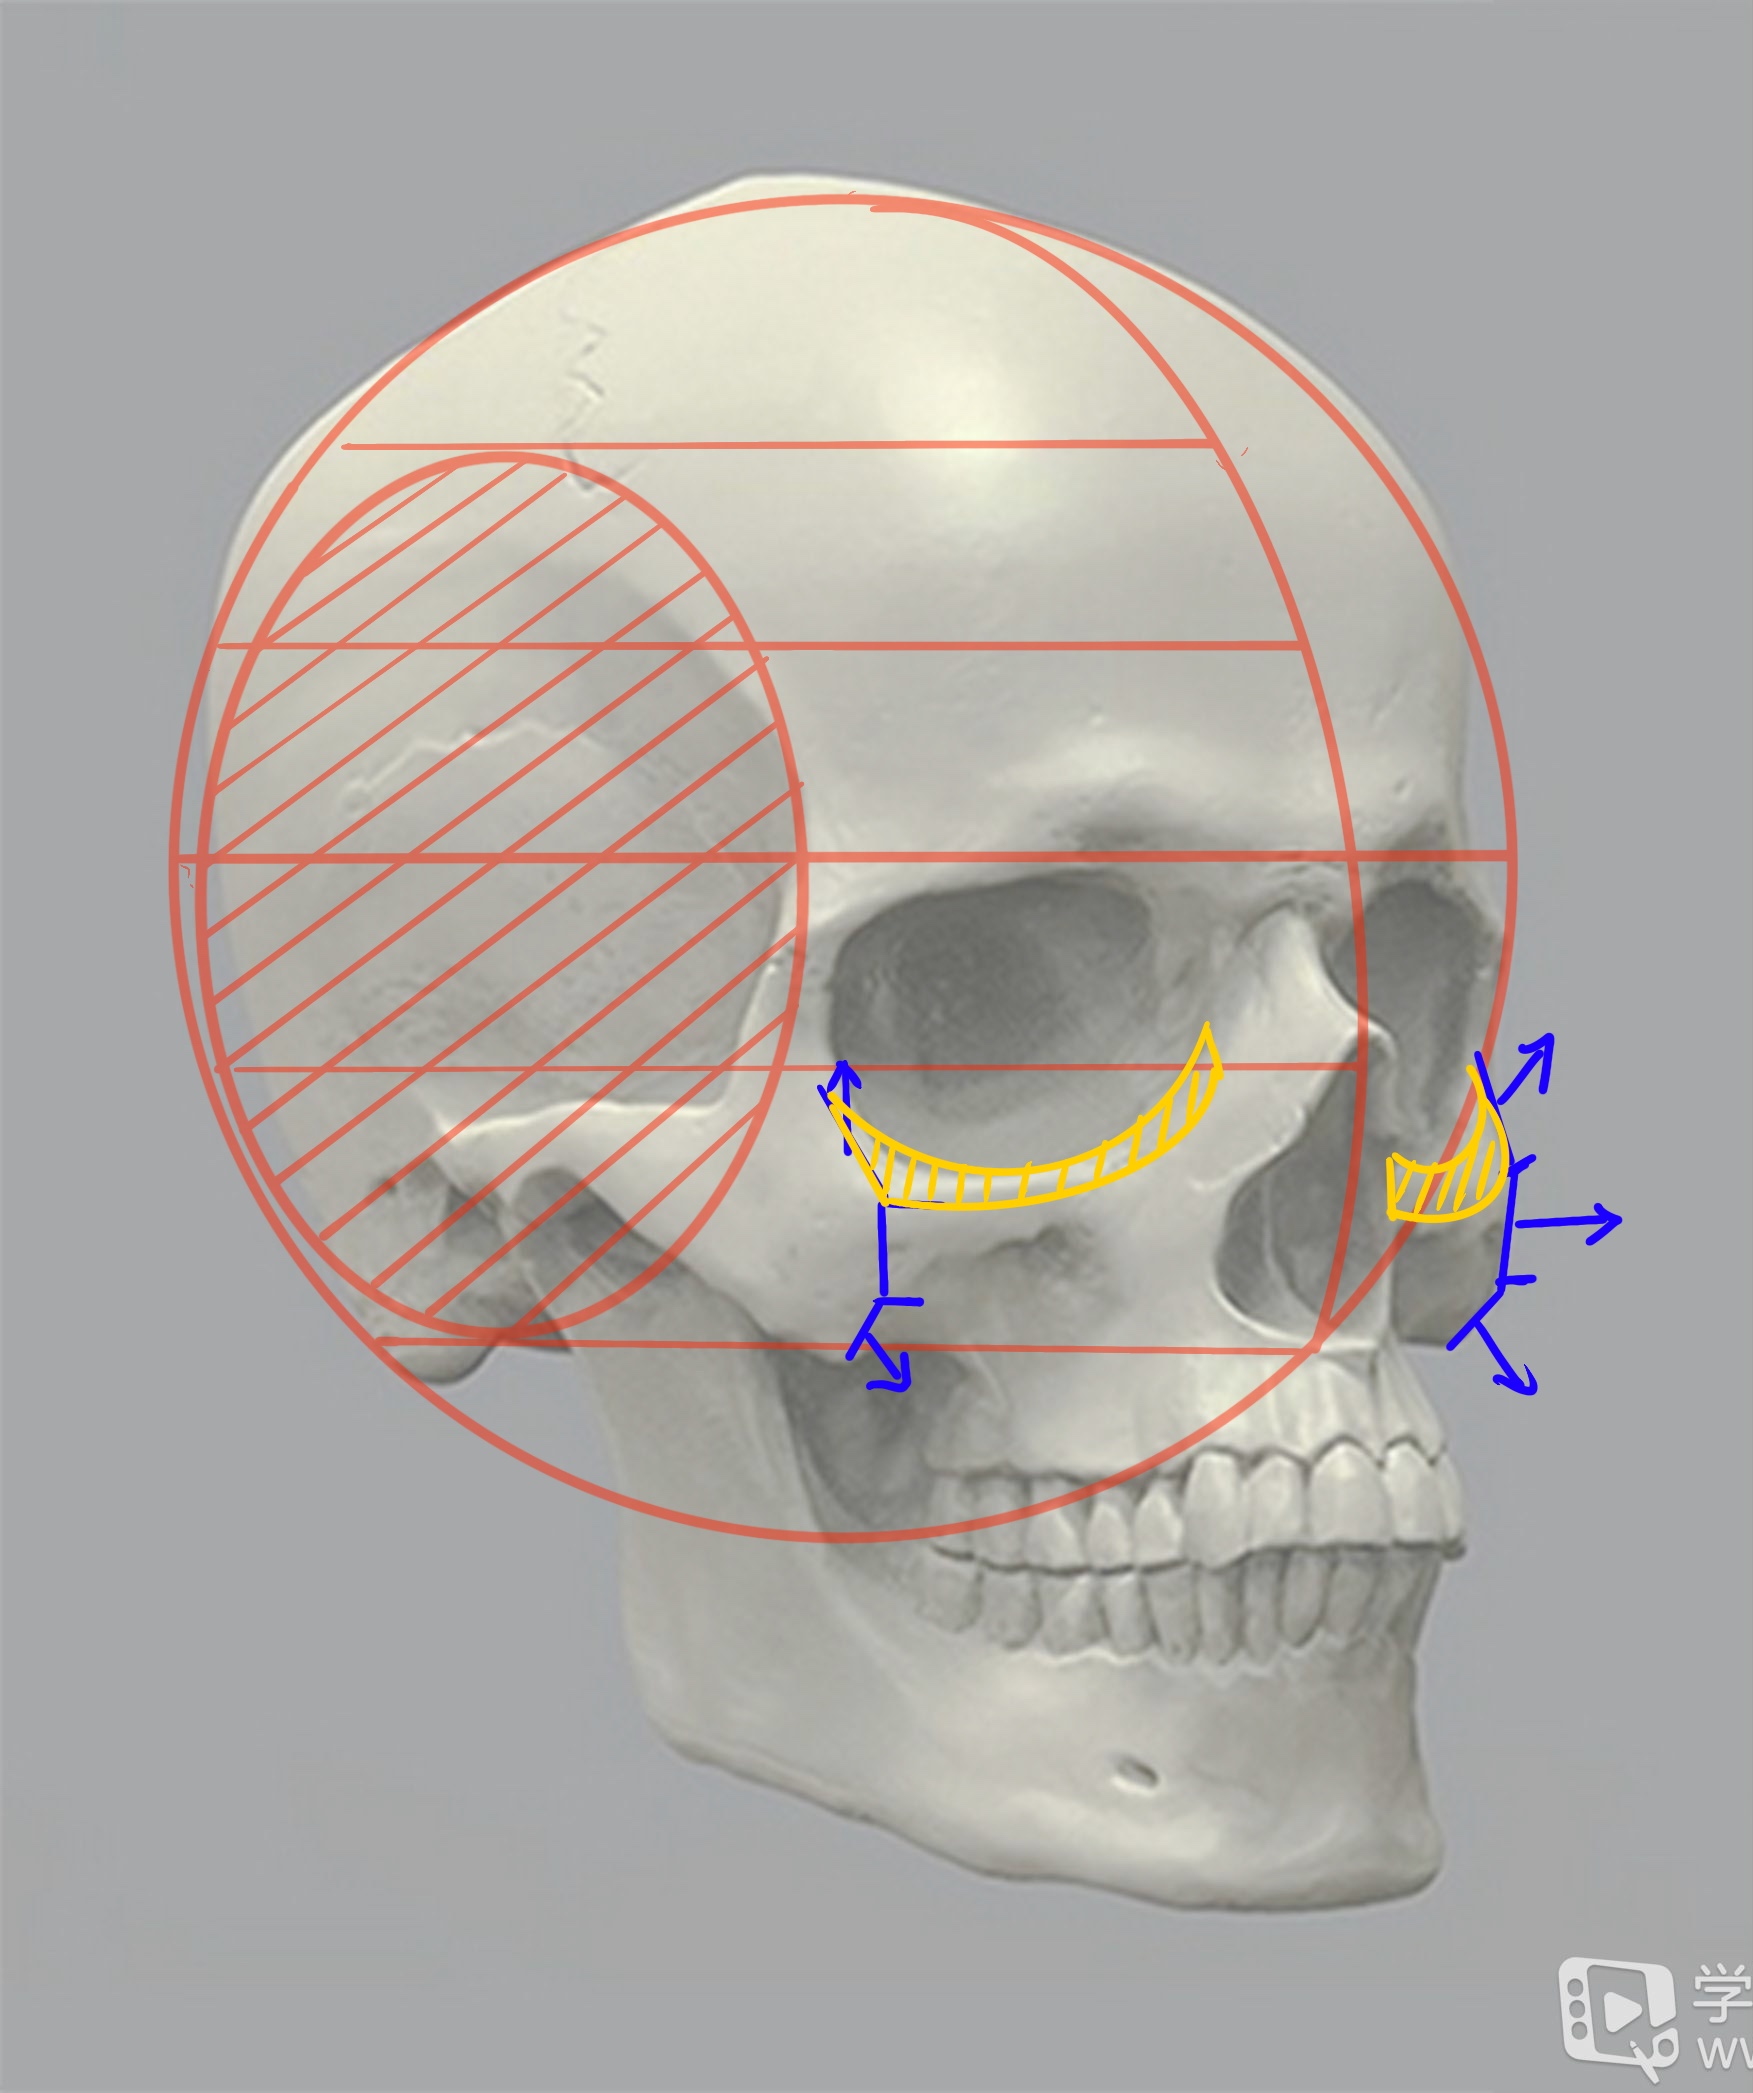 影像解剖超全详解丨一文读懂颅骨解剖 - 头骨高清结构图 - 实验室设备网